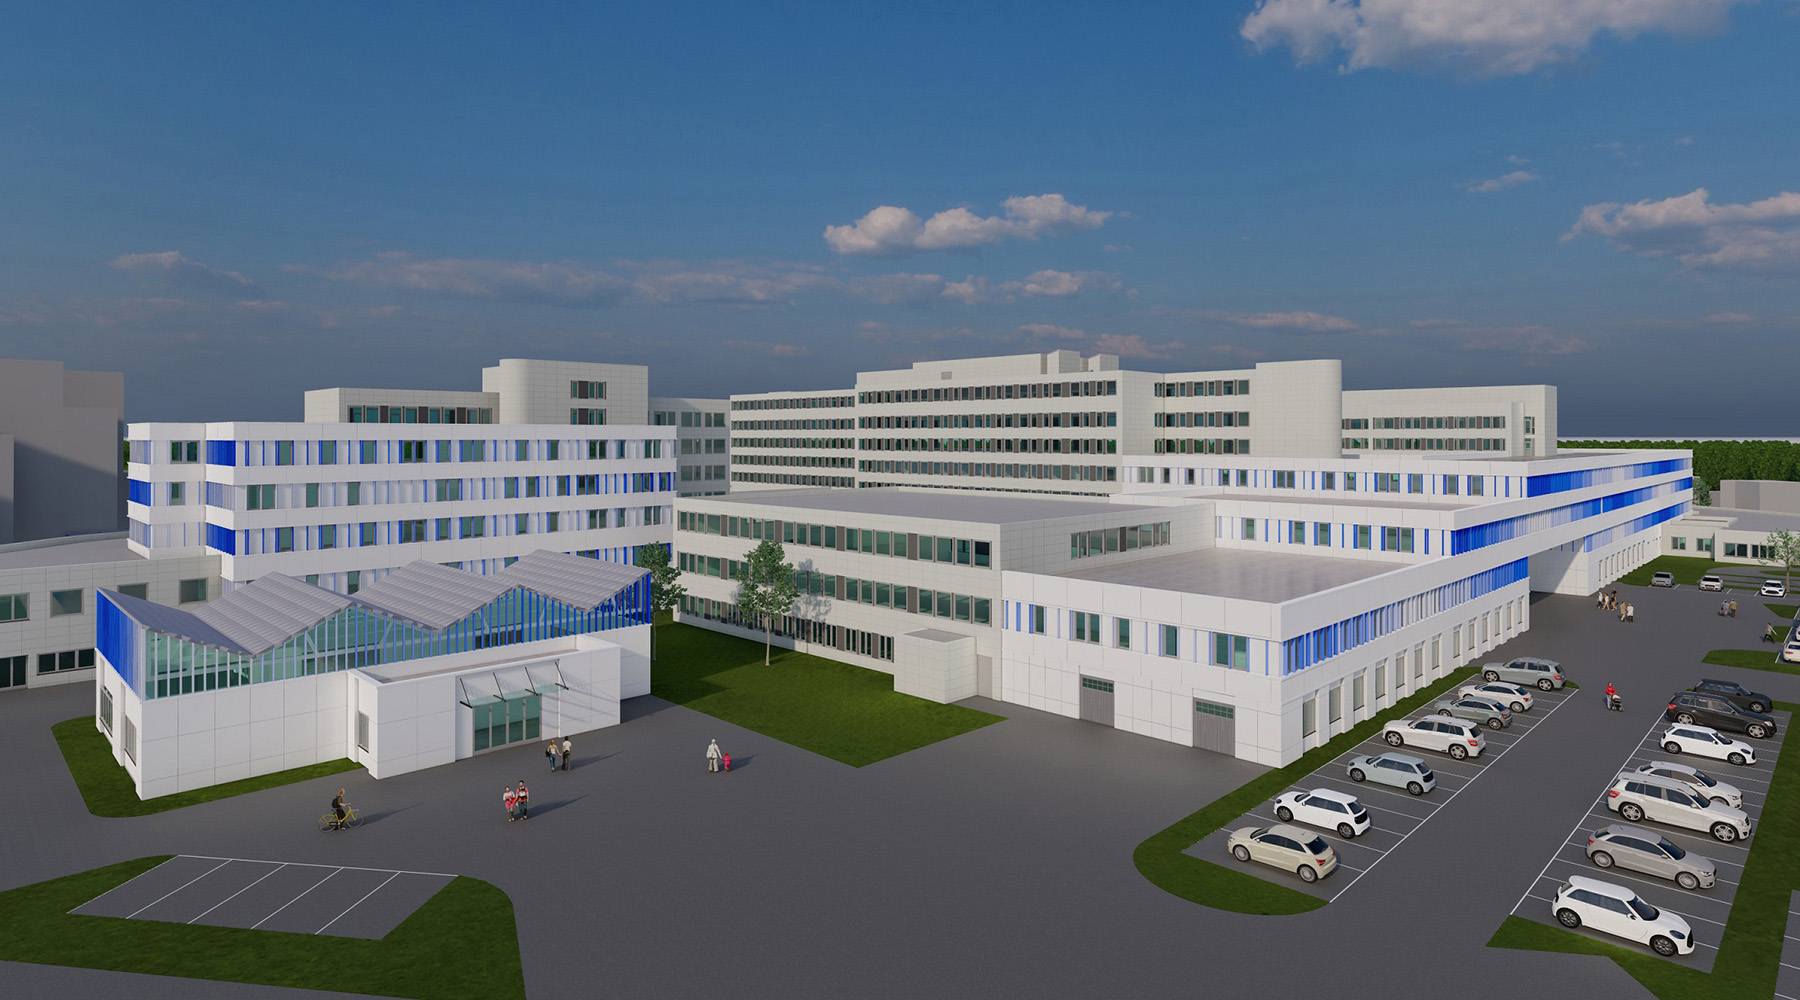 Machbarkeitsstudie/Zielplanung für die Sana Kliniken in Duisburg. 3D-Modell. Vershiedene Gebäudekomplexe, die sich in der Größe unterschieden. Davor ein Parkplatz.